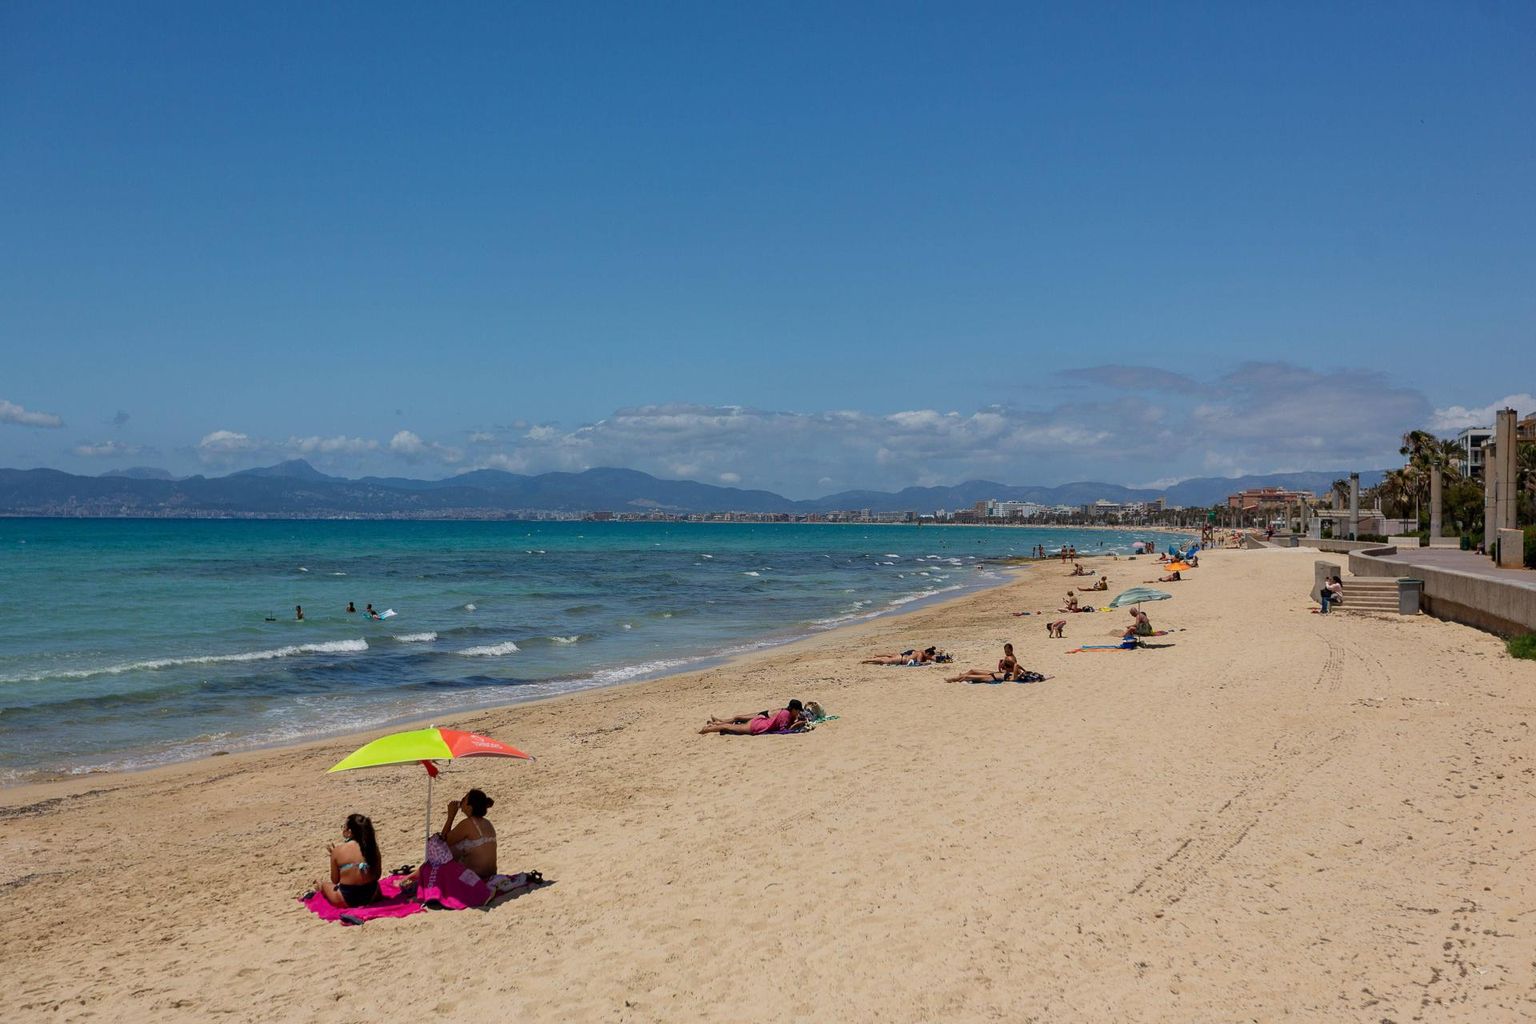 Puhkuseäri hakkab tasapisi elavnema. Selline nägi välja Mallorca rand El Arenal laupäeval.